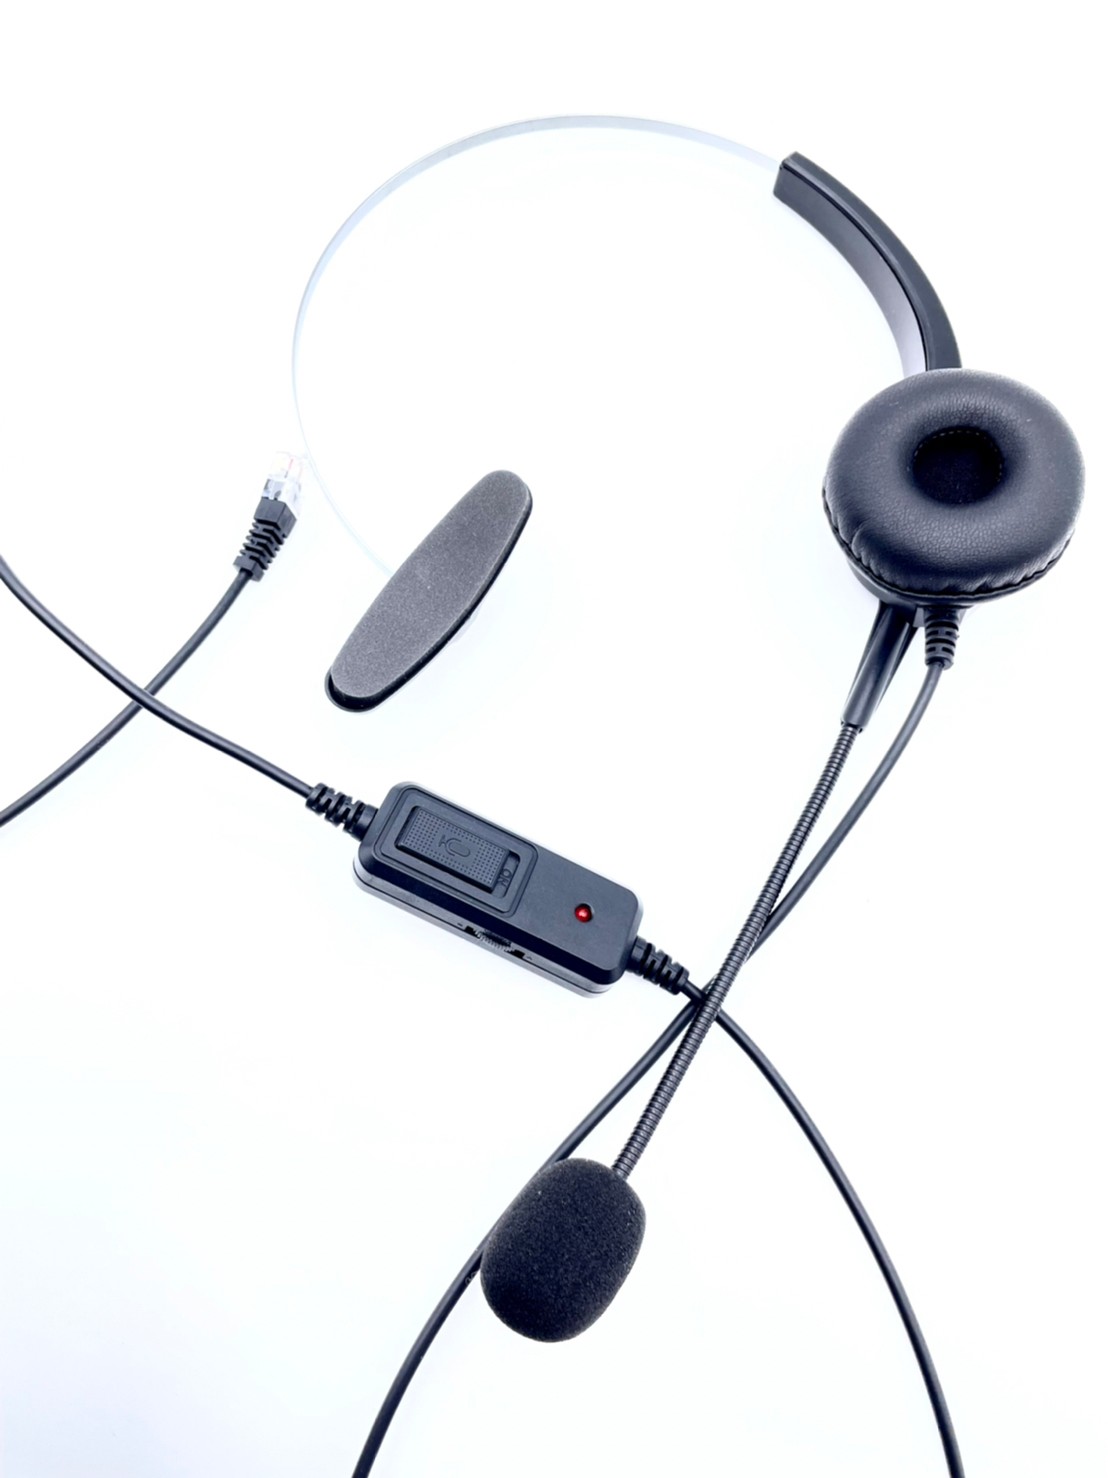 cisco思科 ip phone 電話耳機麥克風 單耳 有含調音大小聲與靜音功能